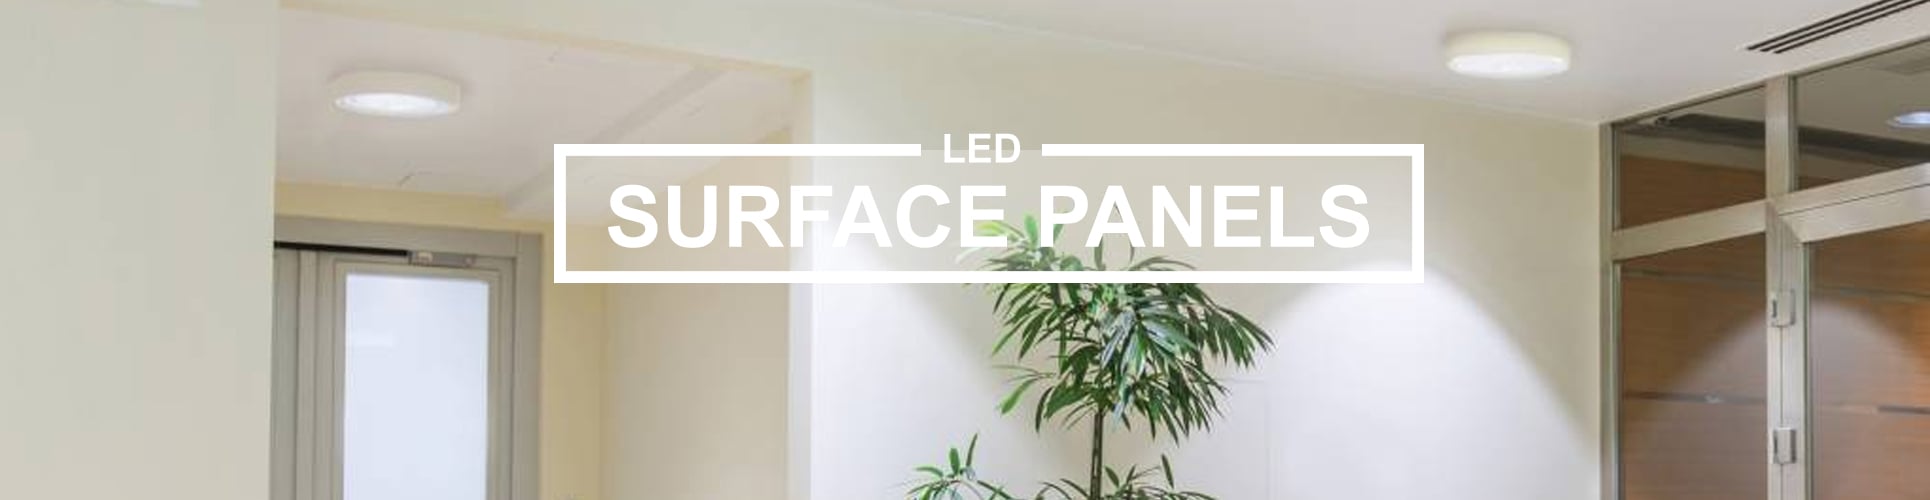 Surface LED panels